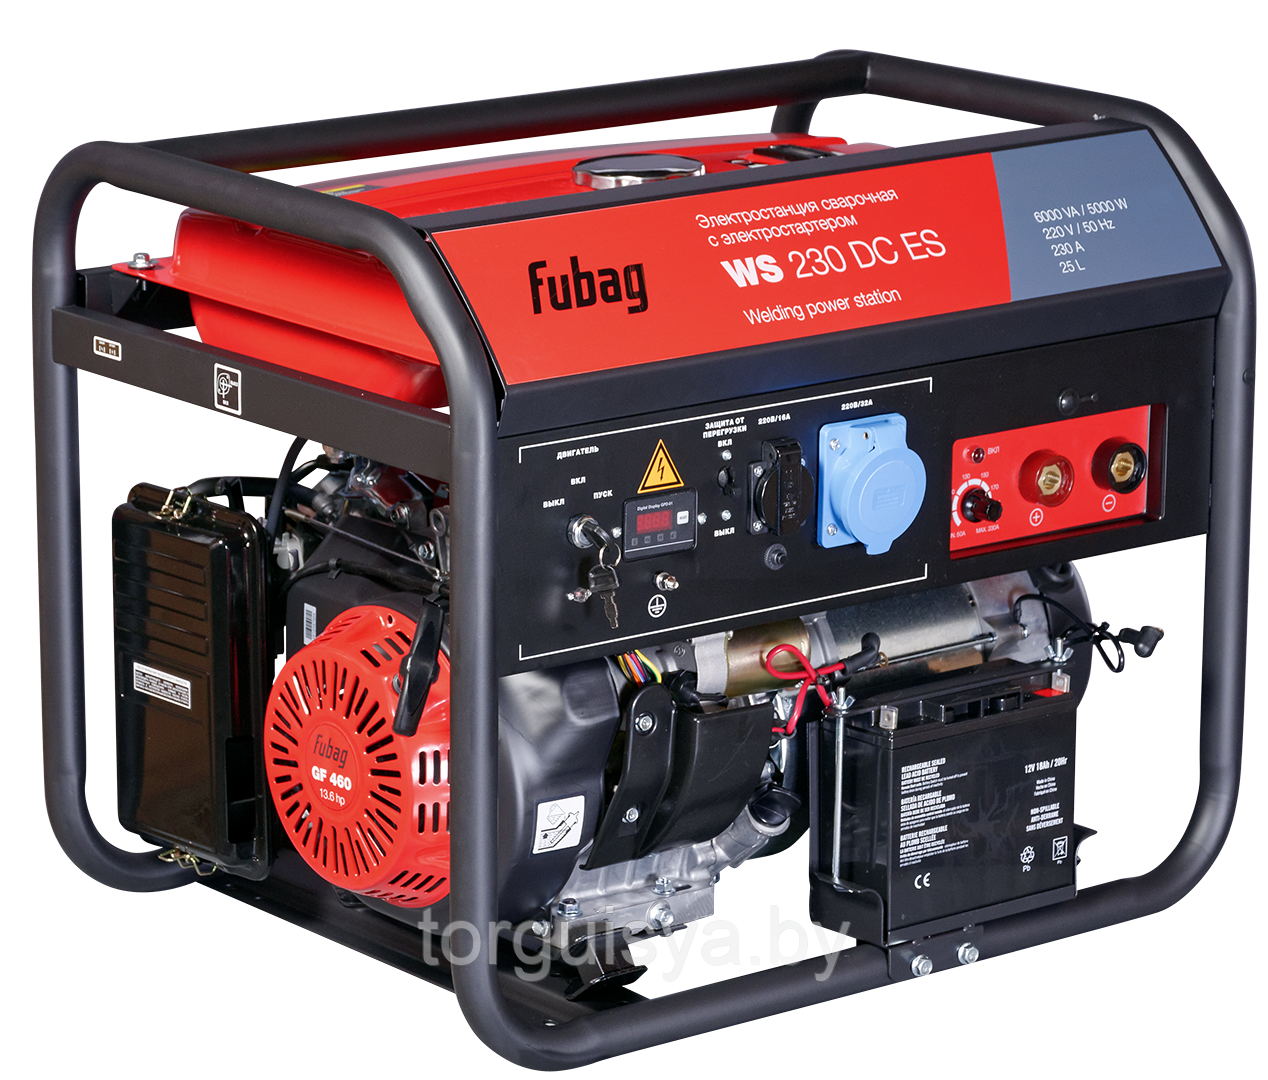 Сварочный генератор FUBAG WS 230 DC ES с электростартером